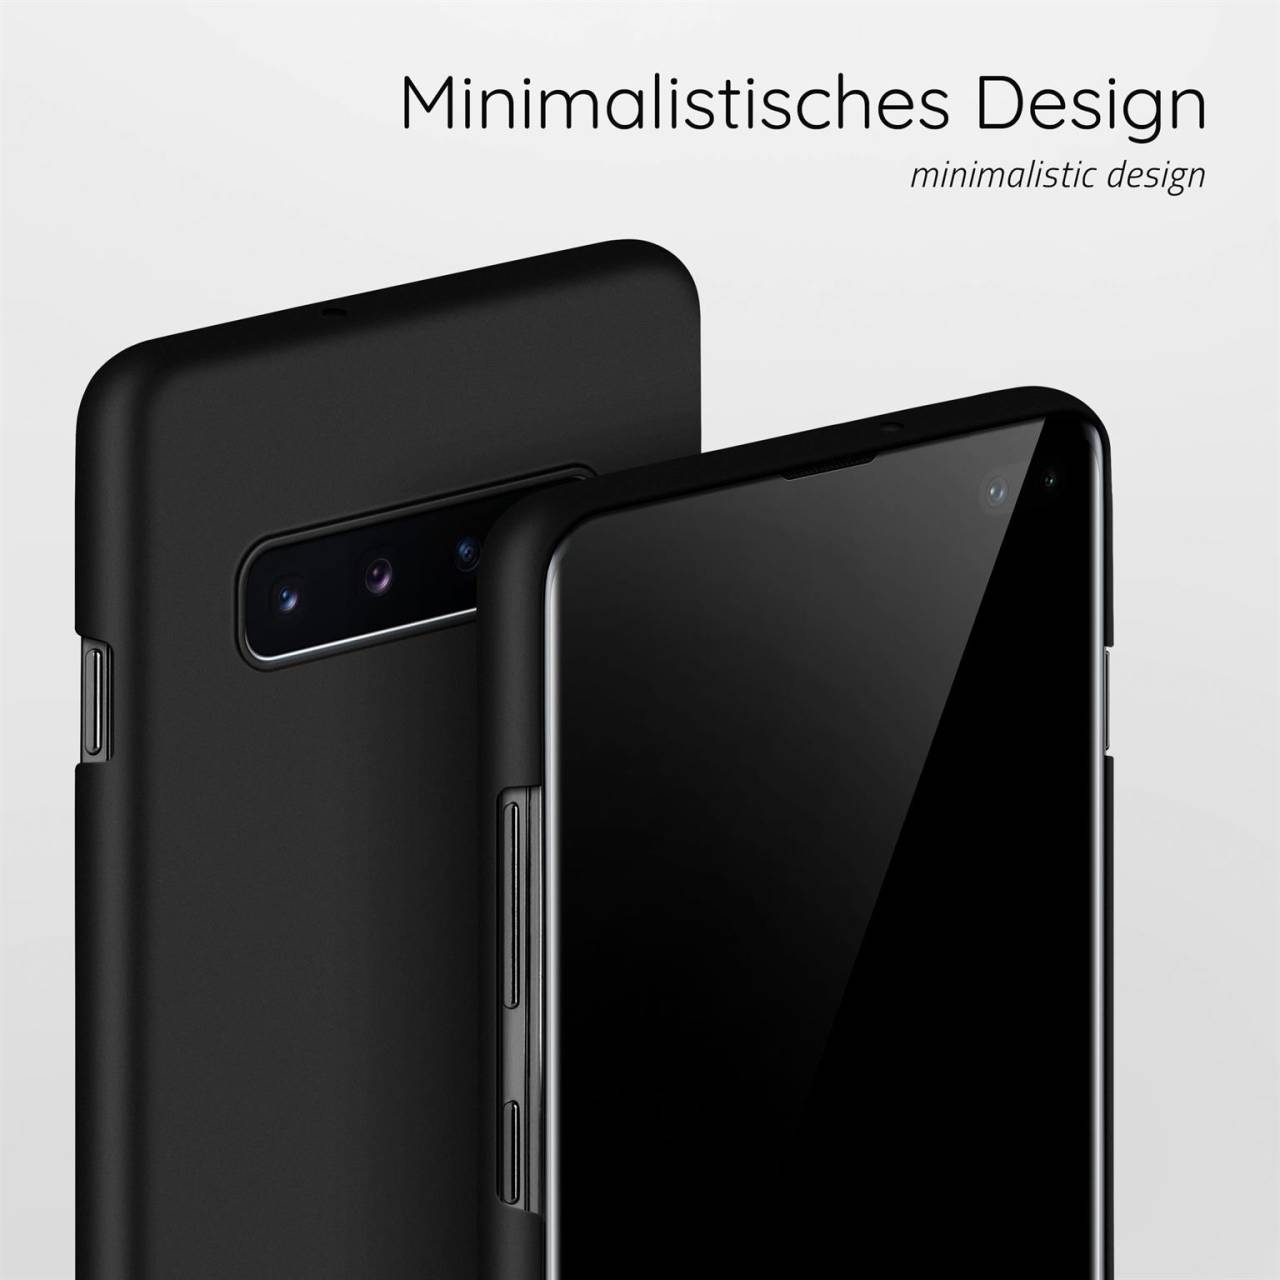 moex Alpha Case für Samsung Galaxy S10 Plus – Extrem dünne, minimalistische Hülle in seidenmatt